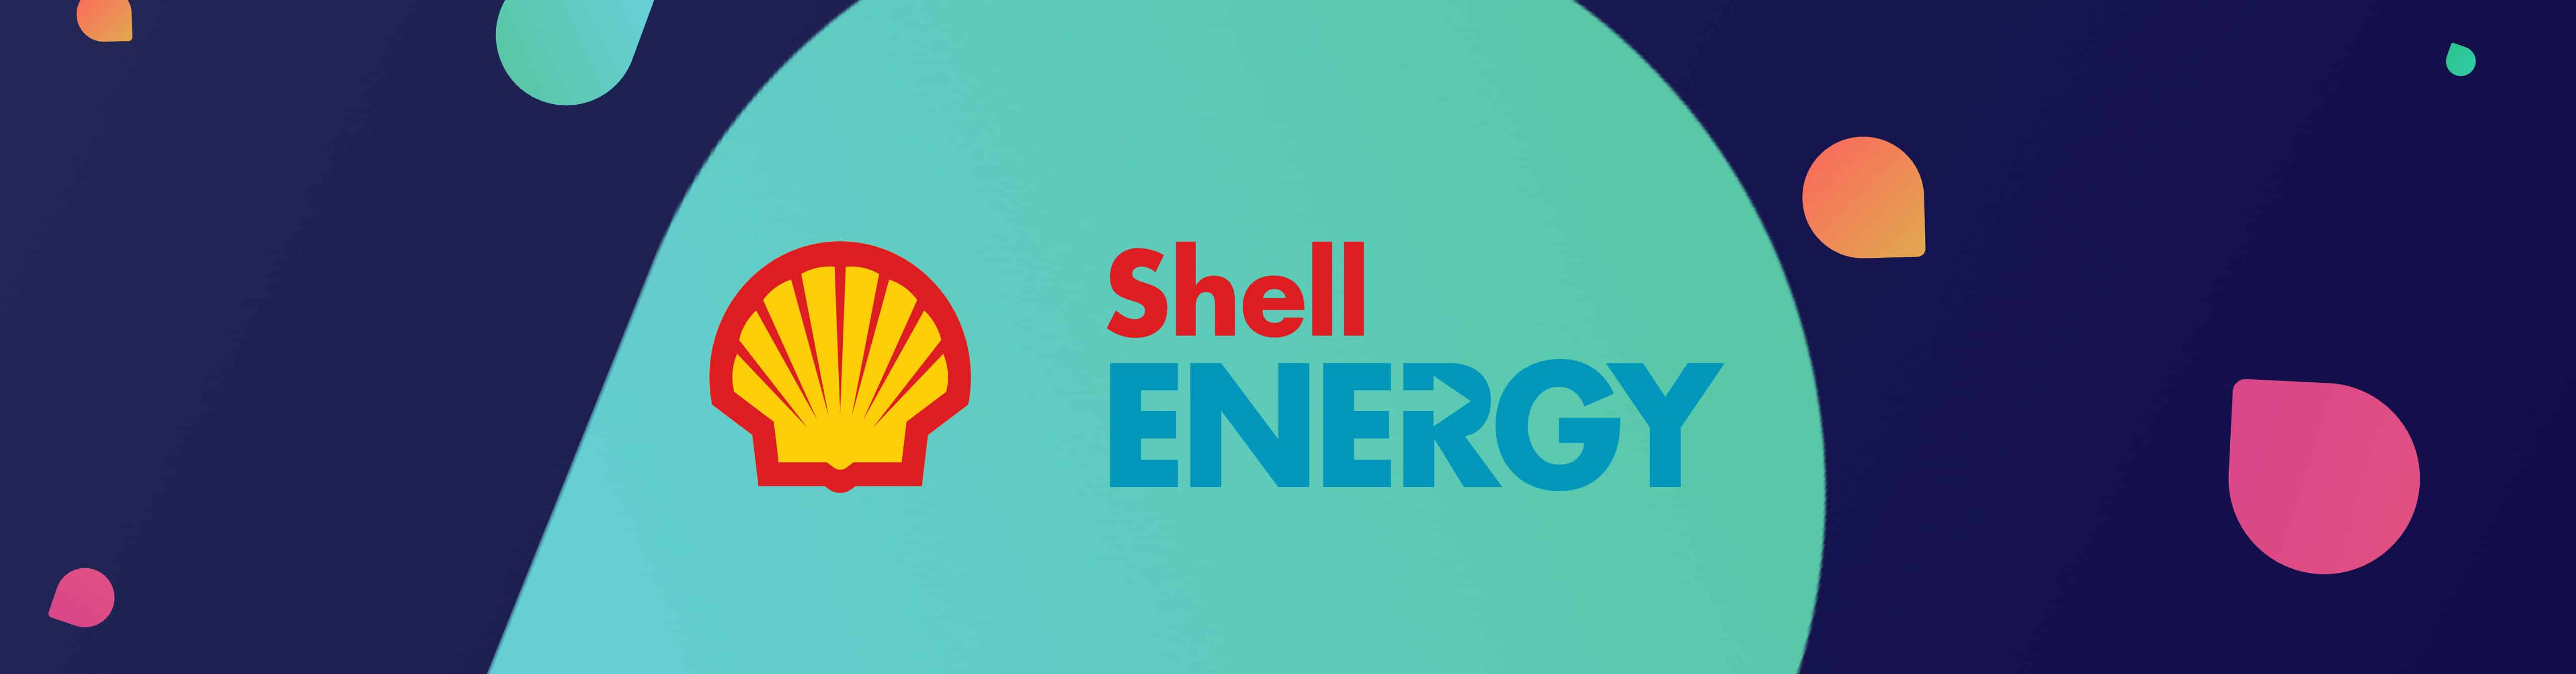 shell energy header